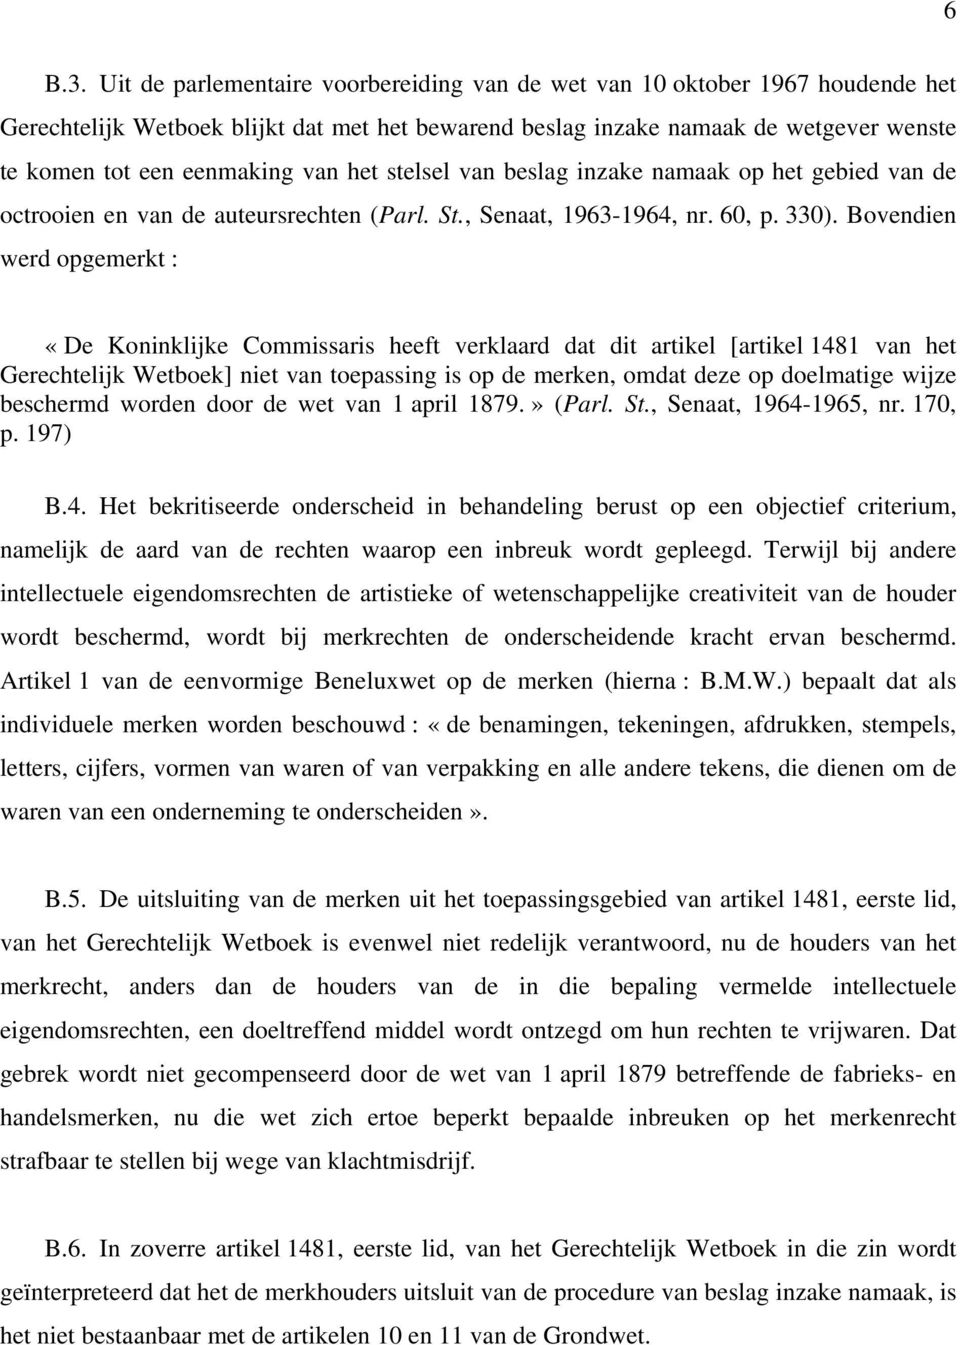 het stelsel van beslag inzake namaak op het gebied van de octrooien en van de auteursrechten (Parl. St., Senaat, 1963-1964, nr. 60, p. 330).